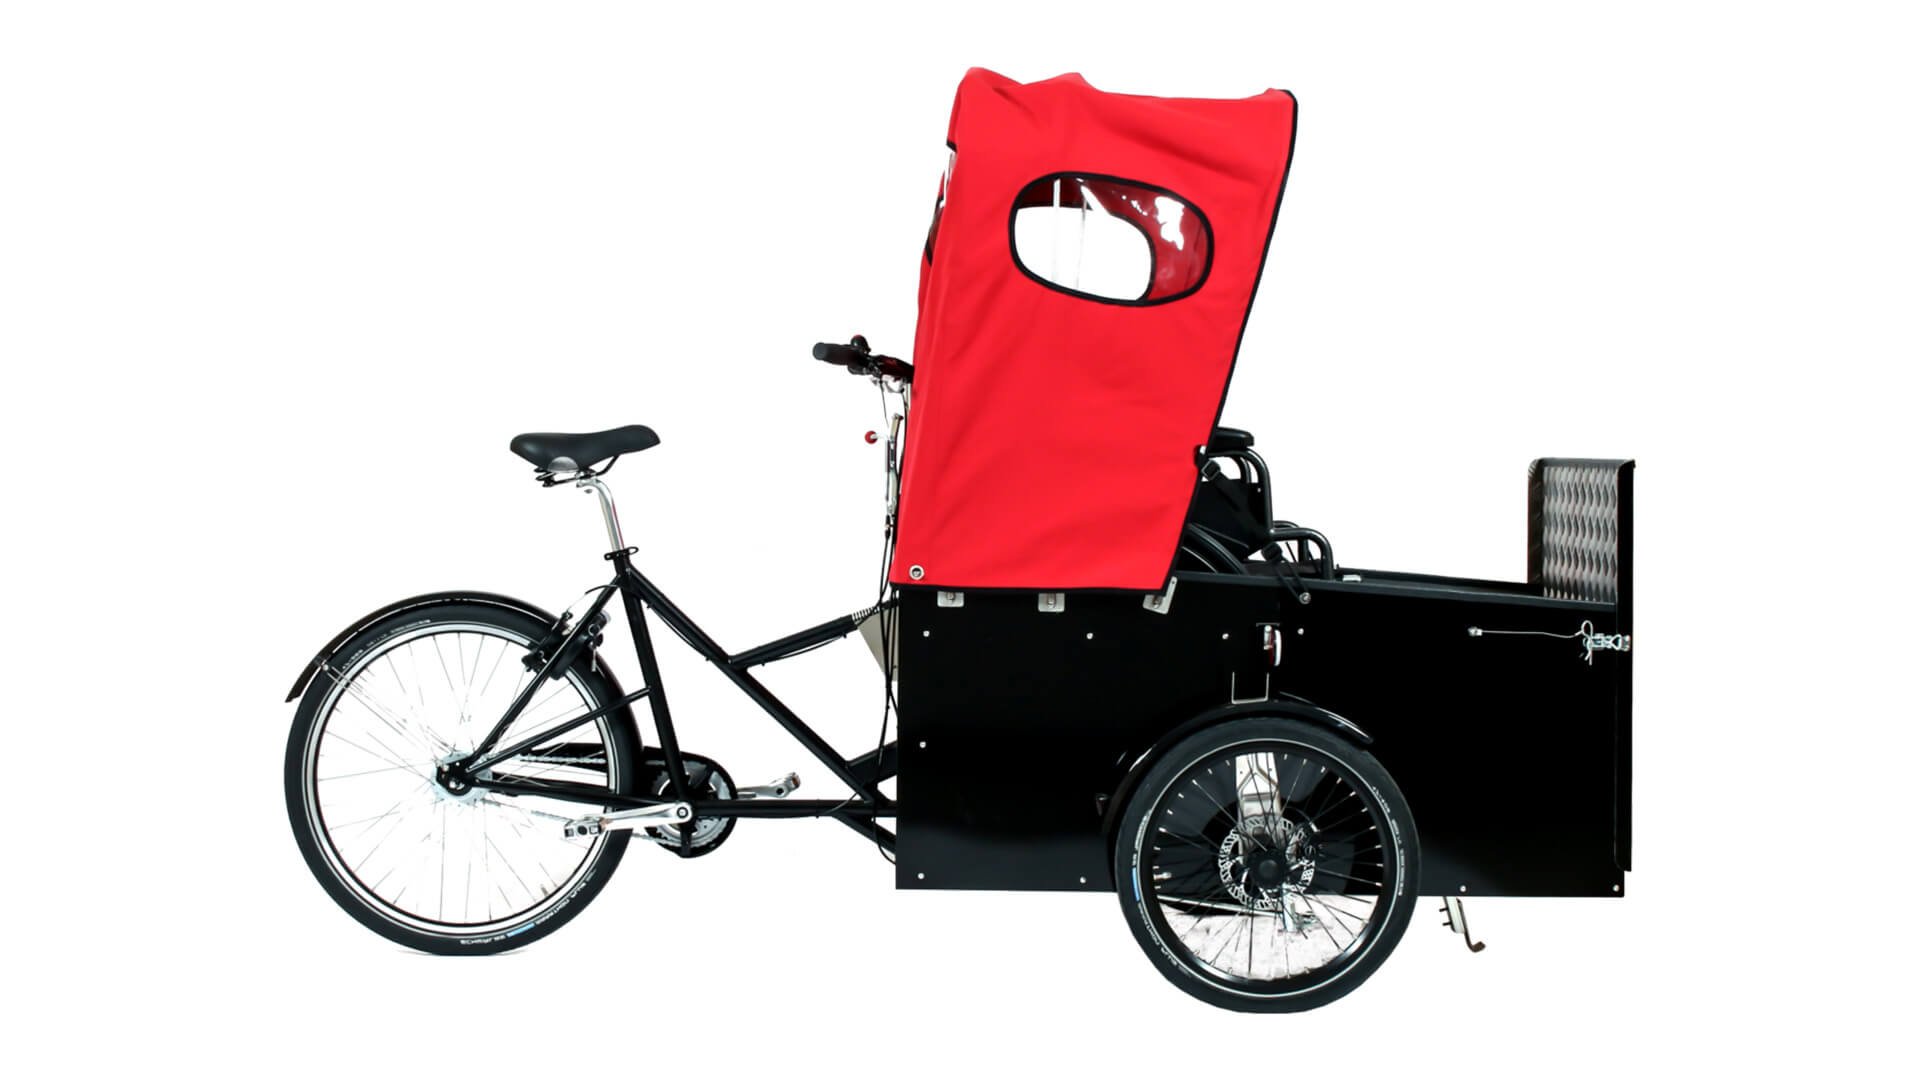 Idéal pour se déplacer à vélo avec un fauteuil roulant 